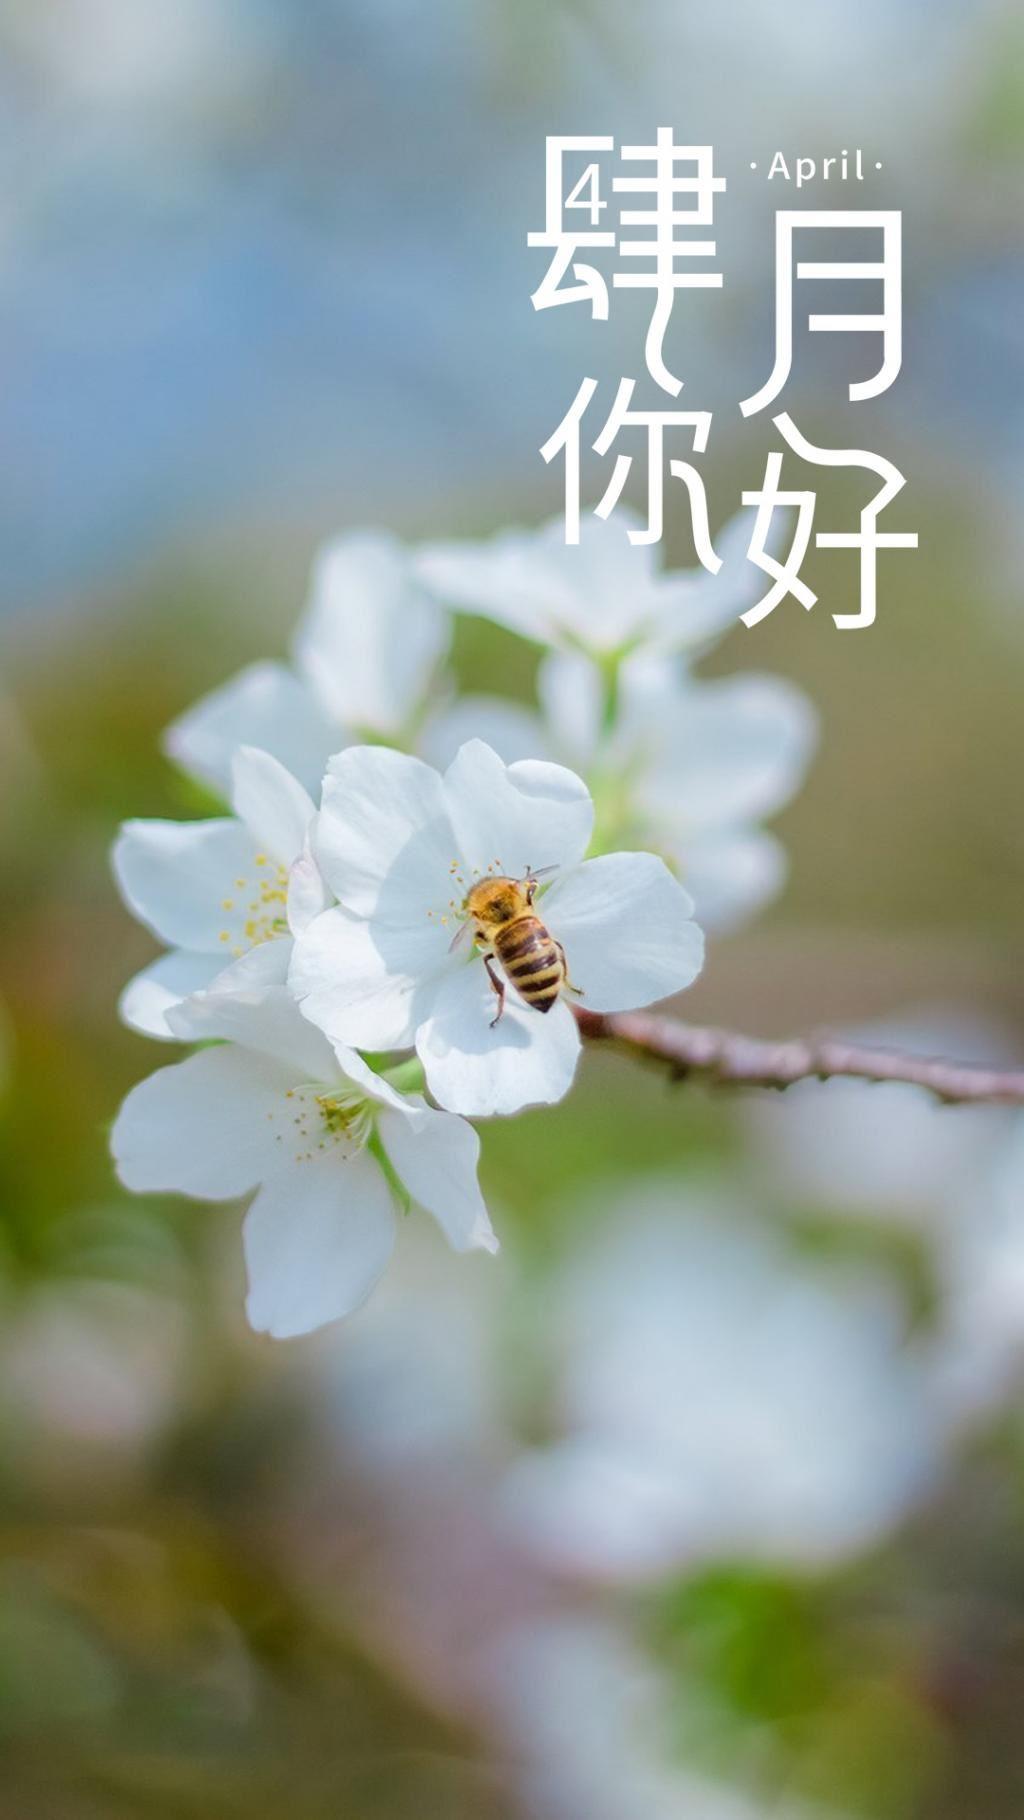 四月你好创意文字精选绽放的花朵上采蜜的蜜蜂图片